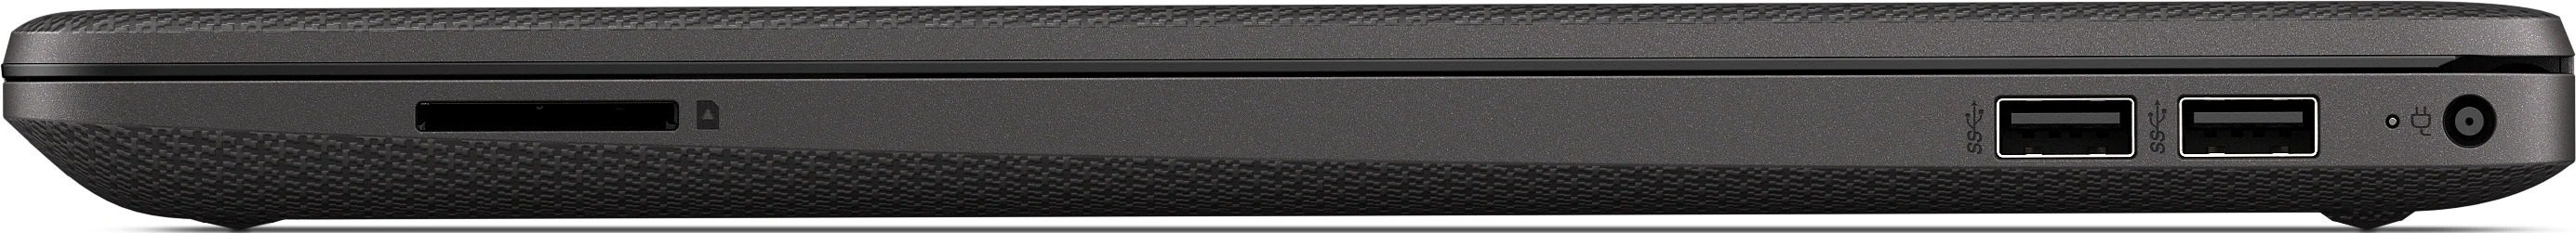 Ноутбук HP 255 G8 R5-3500U 2.1GHz,15.6" FHD (1920x1080) AG,8Gb DDR4(1),256Gb SSD,41Wh,1.8kg,1y,Dark Ash Silver,Dos-39312